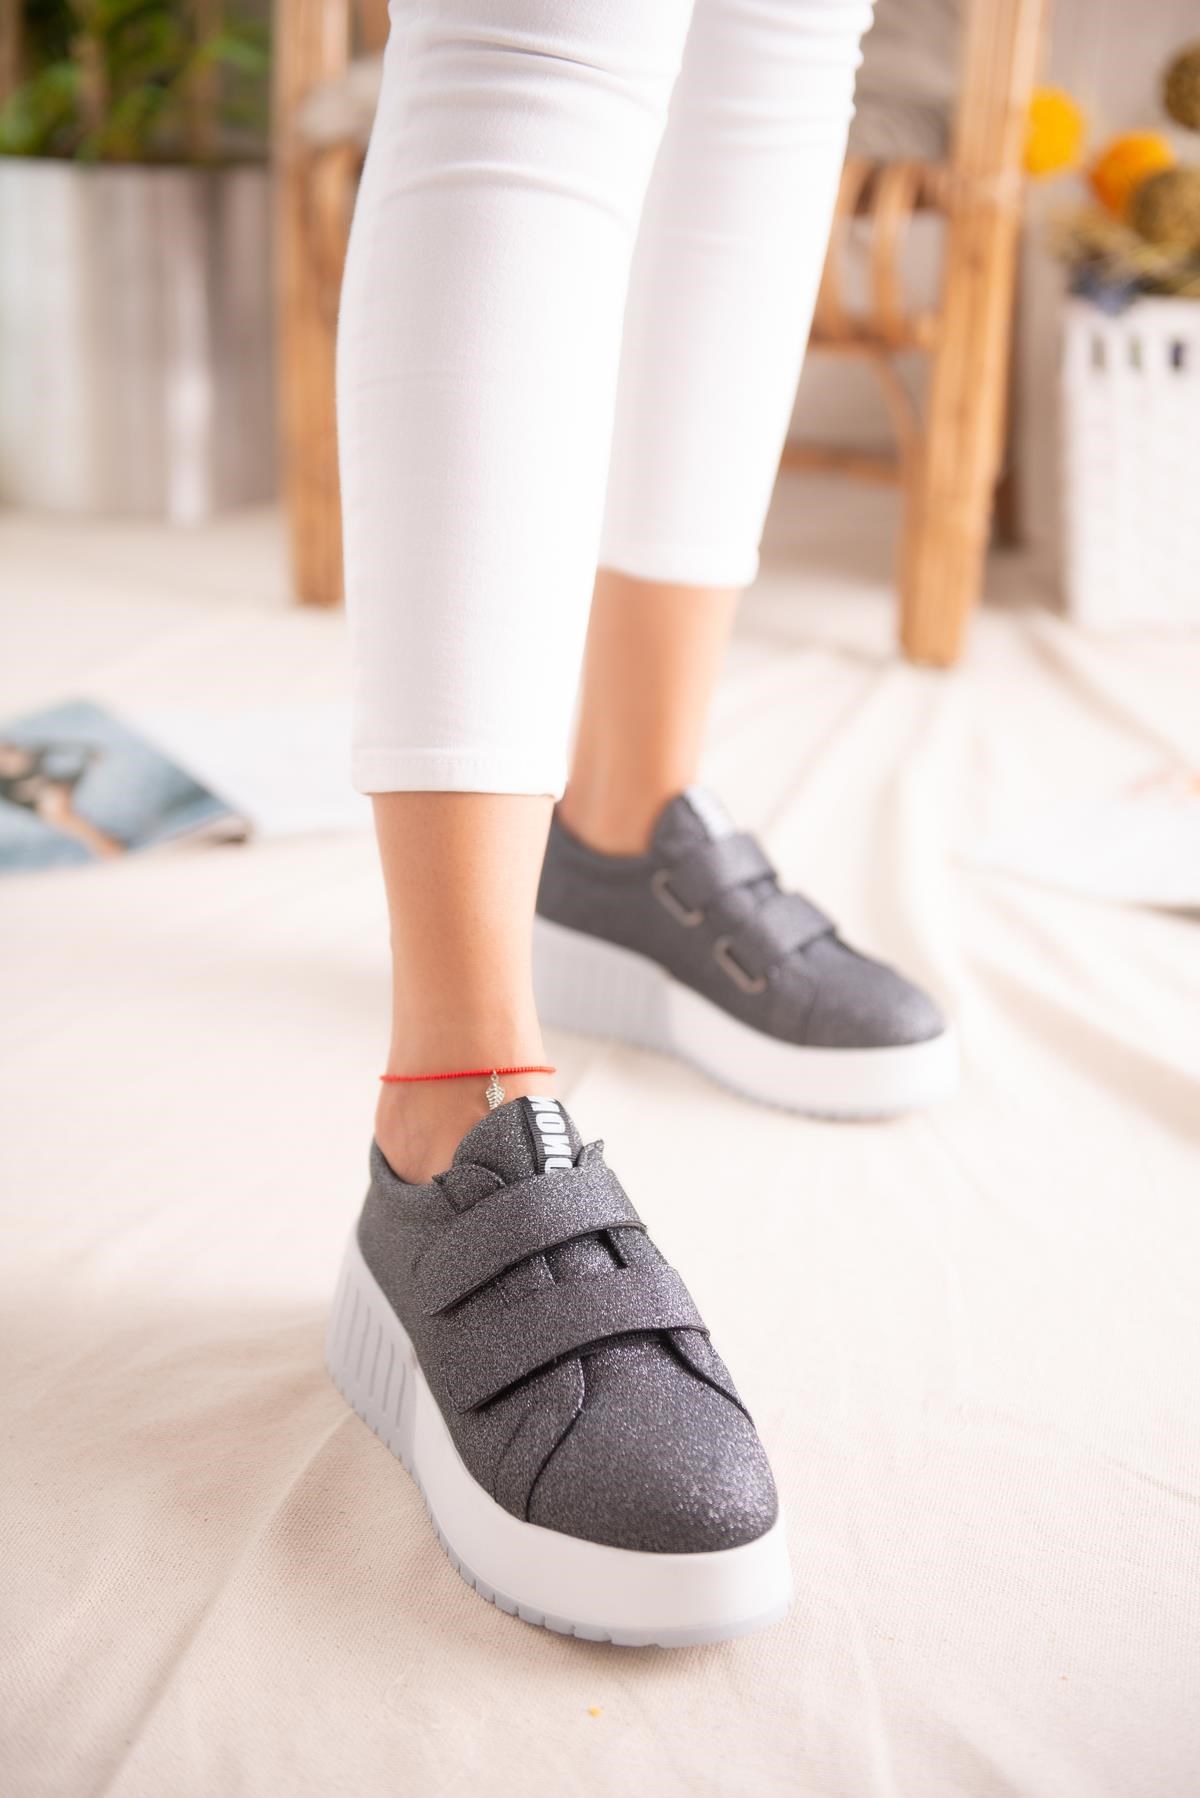 Julia Platin Simli Çift Bantlı Yüksek Tabanlı Sneakers Spor Ayakkabı |  Limoya.com ile Modayı Keşfet!